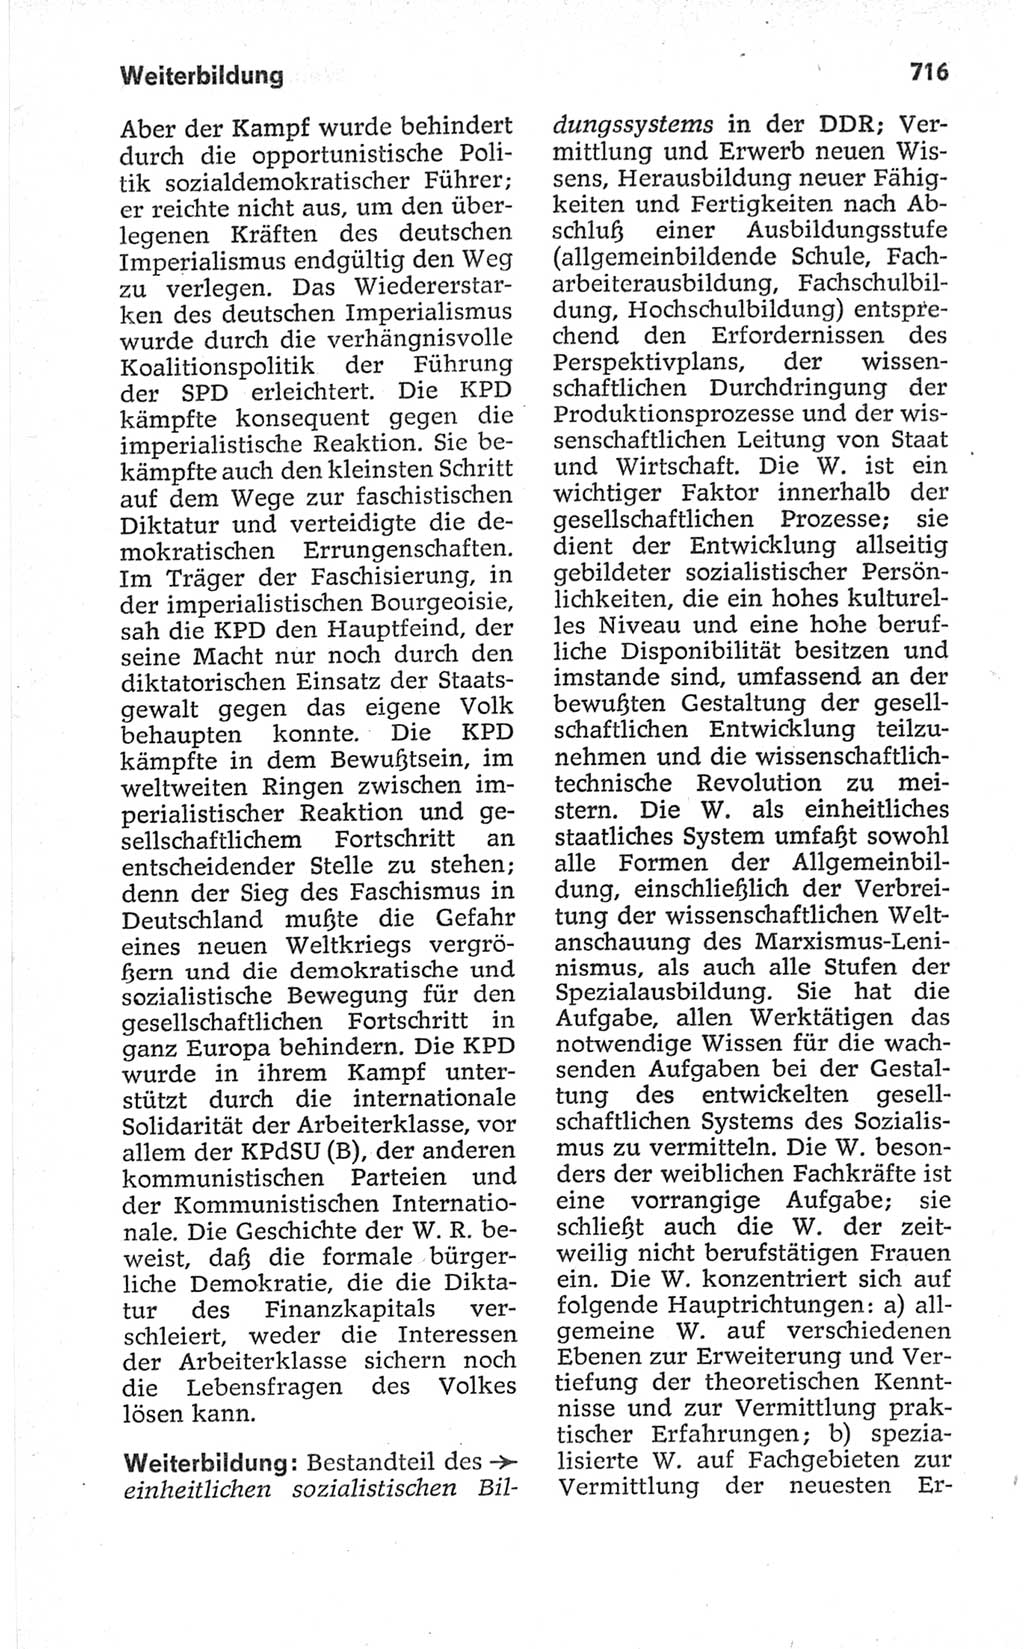 Kleines politisches Wörterbuch [Deutsche Demokratische Republik (DDR)] 1967, Seite 716 (Kl. pol. Wb. DDR 1967, S. 716)